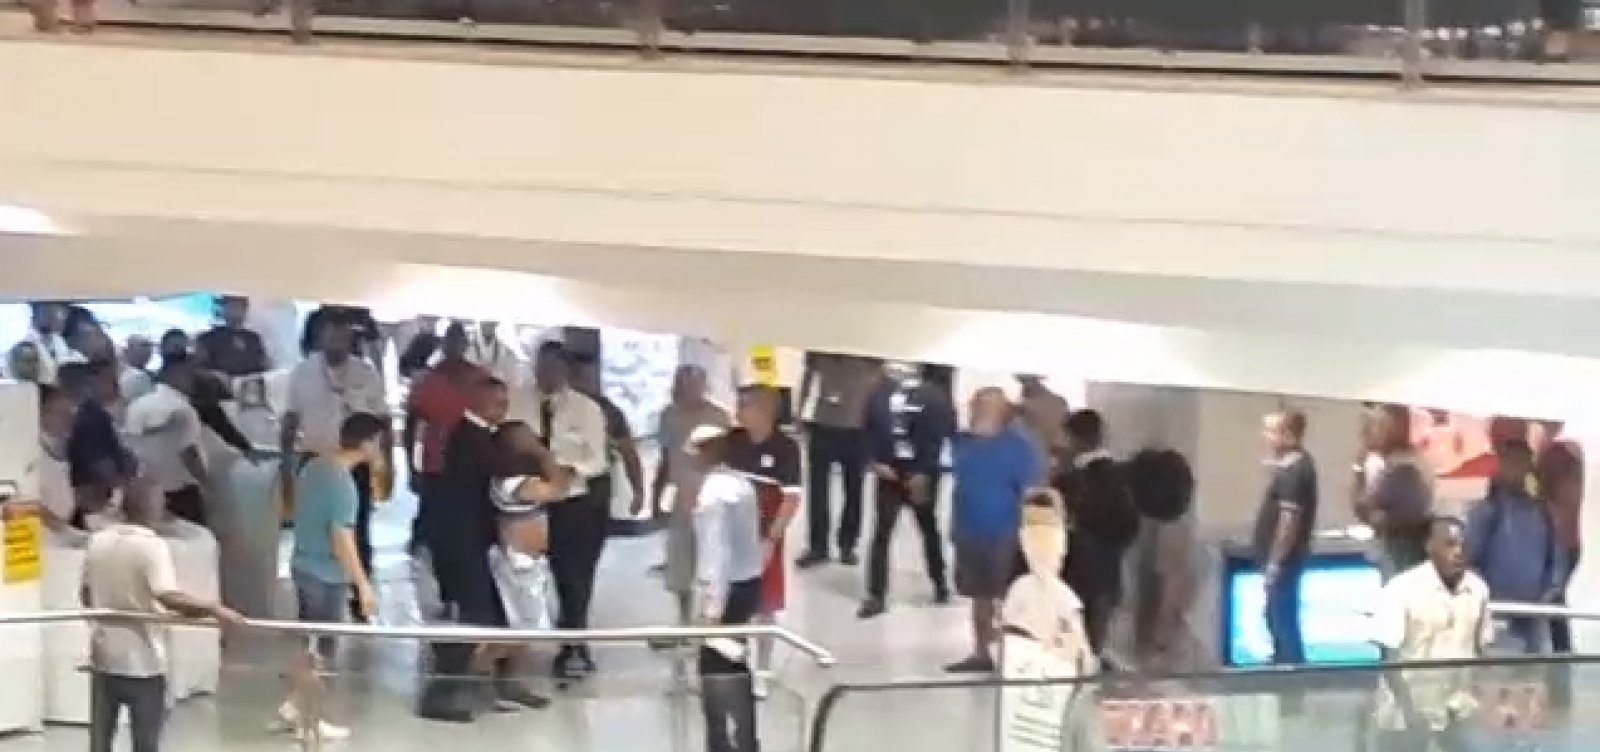 Homem é detido por suspeita de roubo em Shopping Salvador; veja vídeo